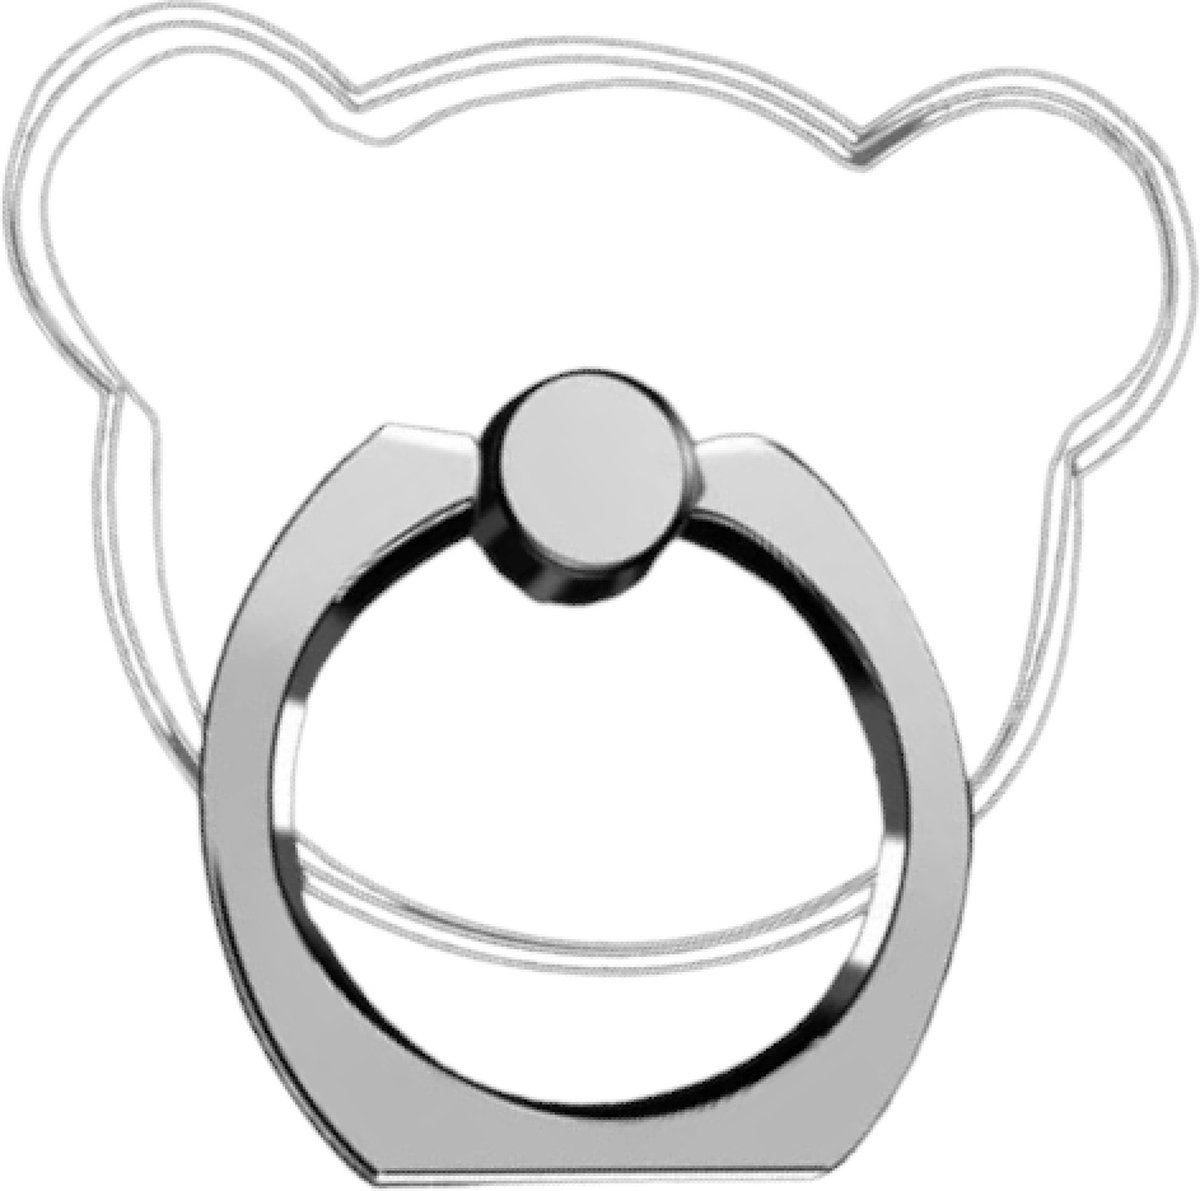 Bijoux by Ive - Transparante beer ringvinger houder / standaard voor je mobiele telefoon